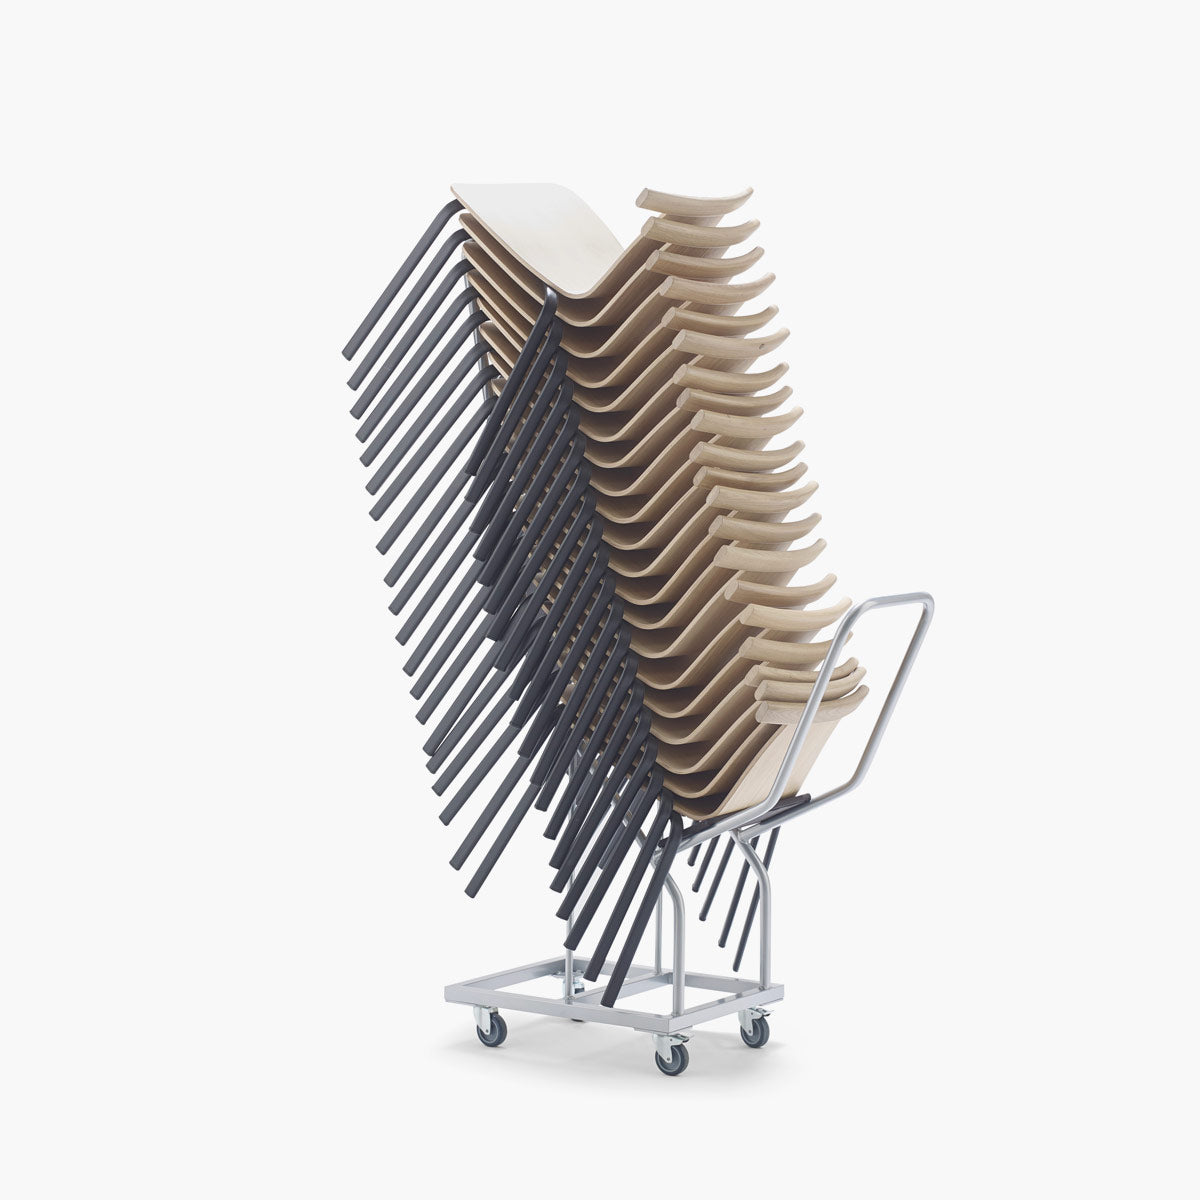 Atal Chair